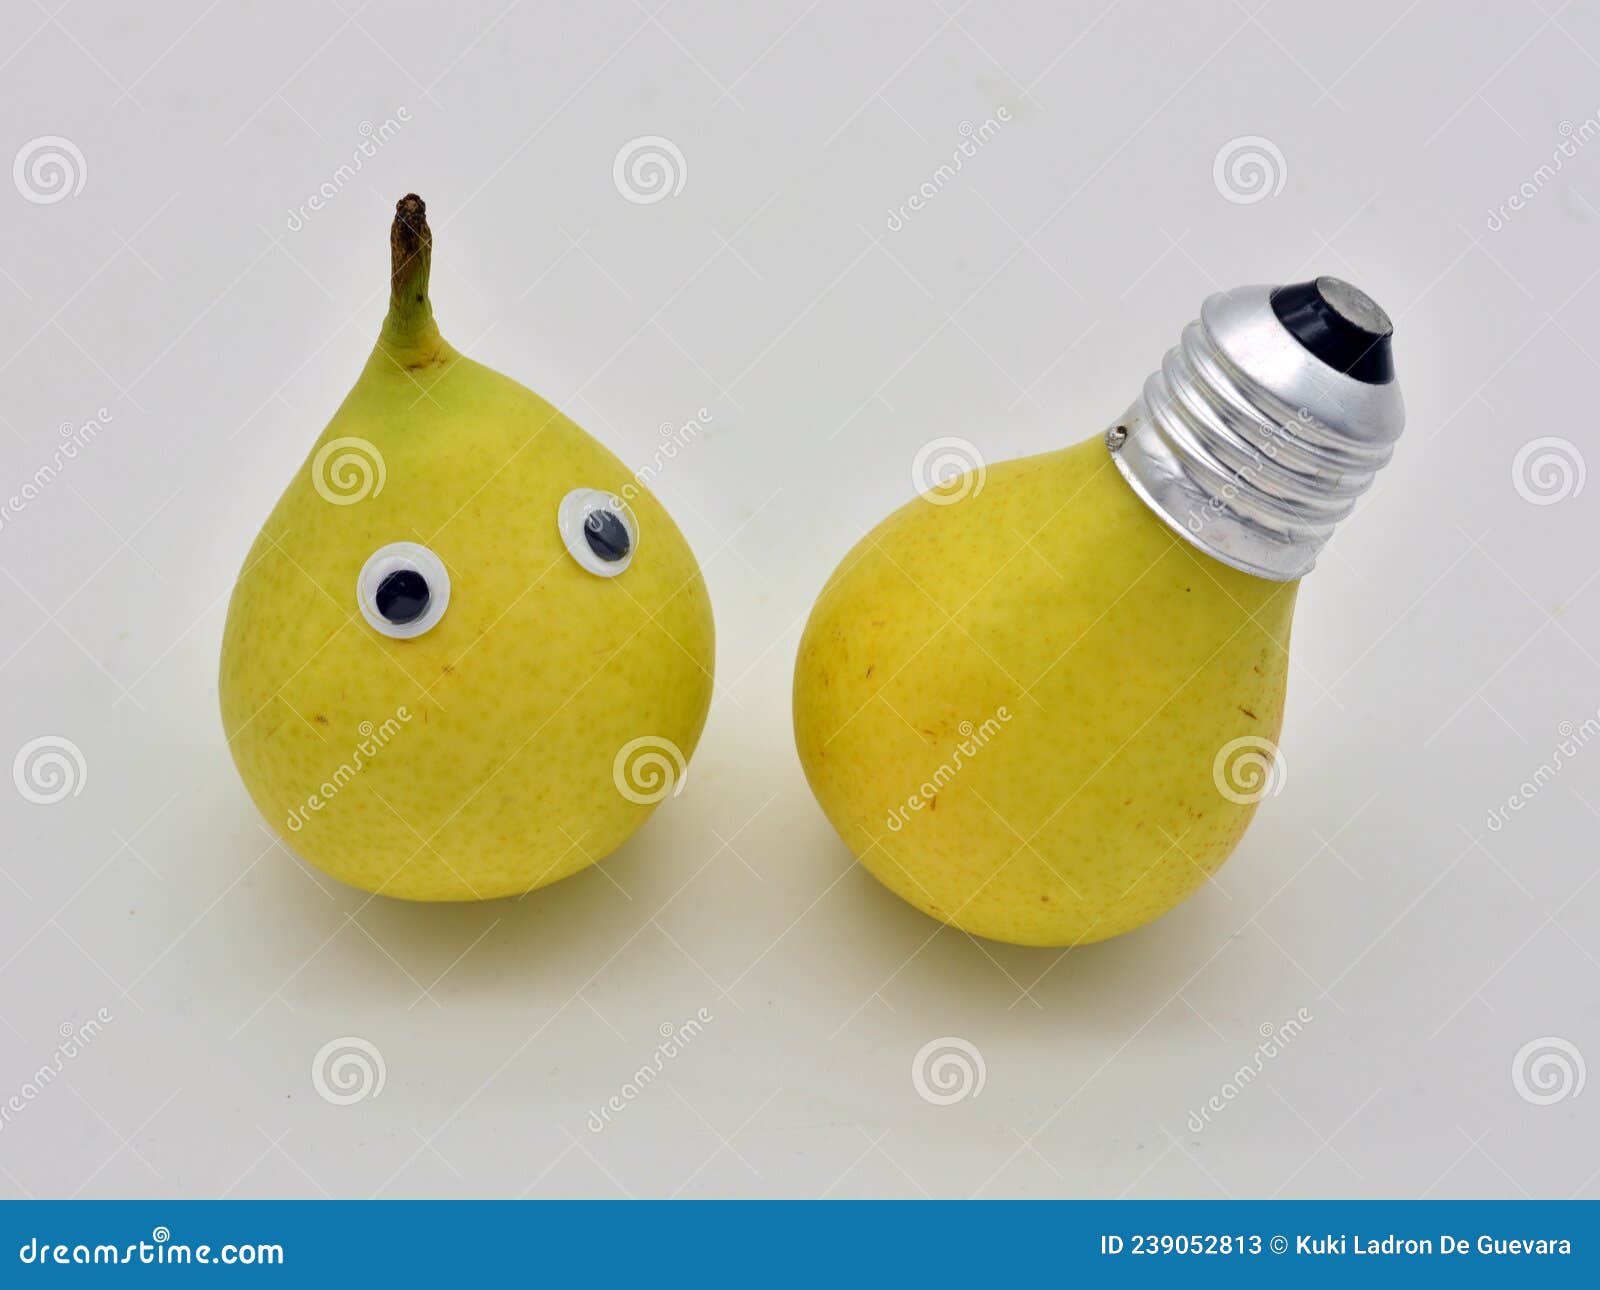 pears as electric light bulbs